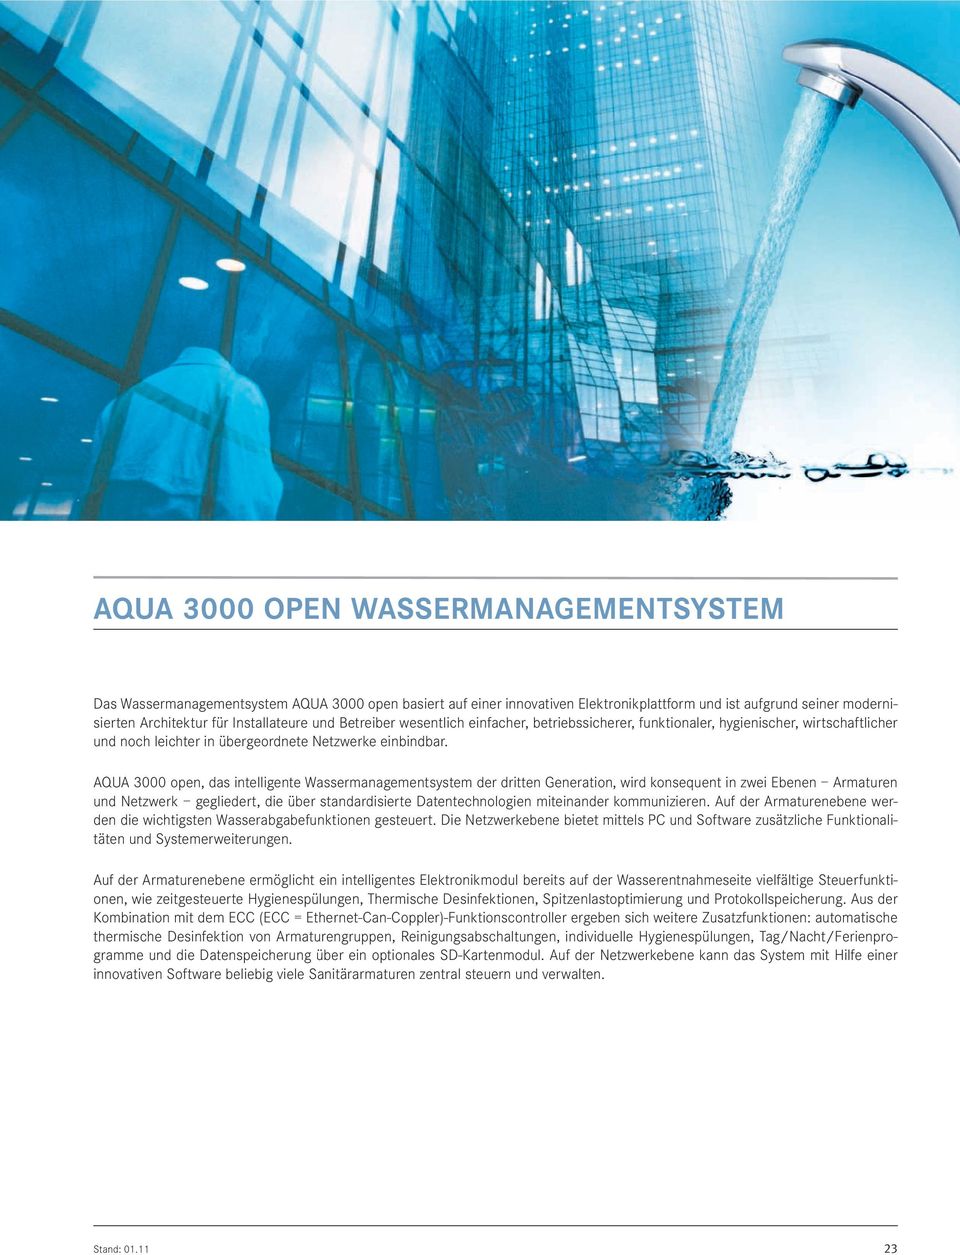 QU 3000 open, das intelligente Wassermanagementsystem der dritten Generation, wird konsequent in zwei Ebenen rmaturen und Netzwerk gegliedert, die über standardisierte Datentechnologien miteinander